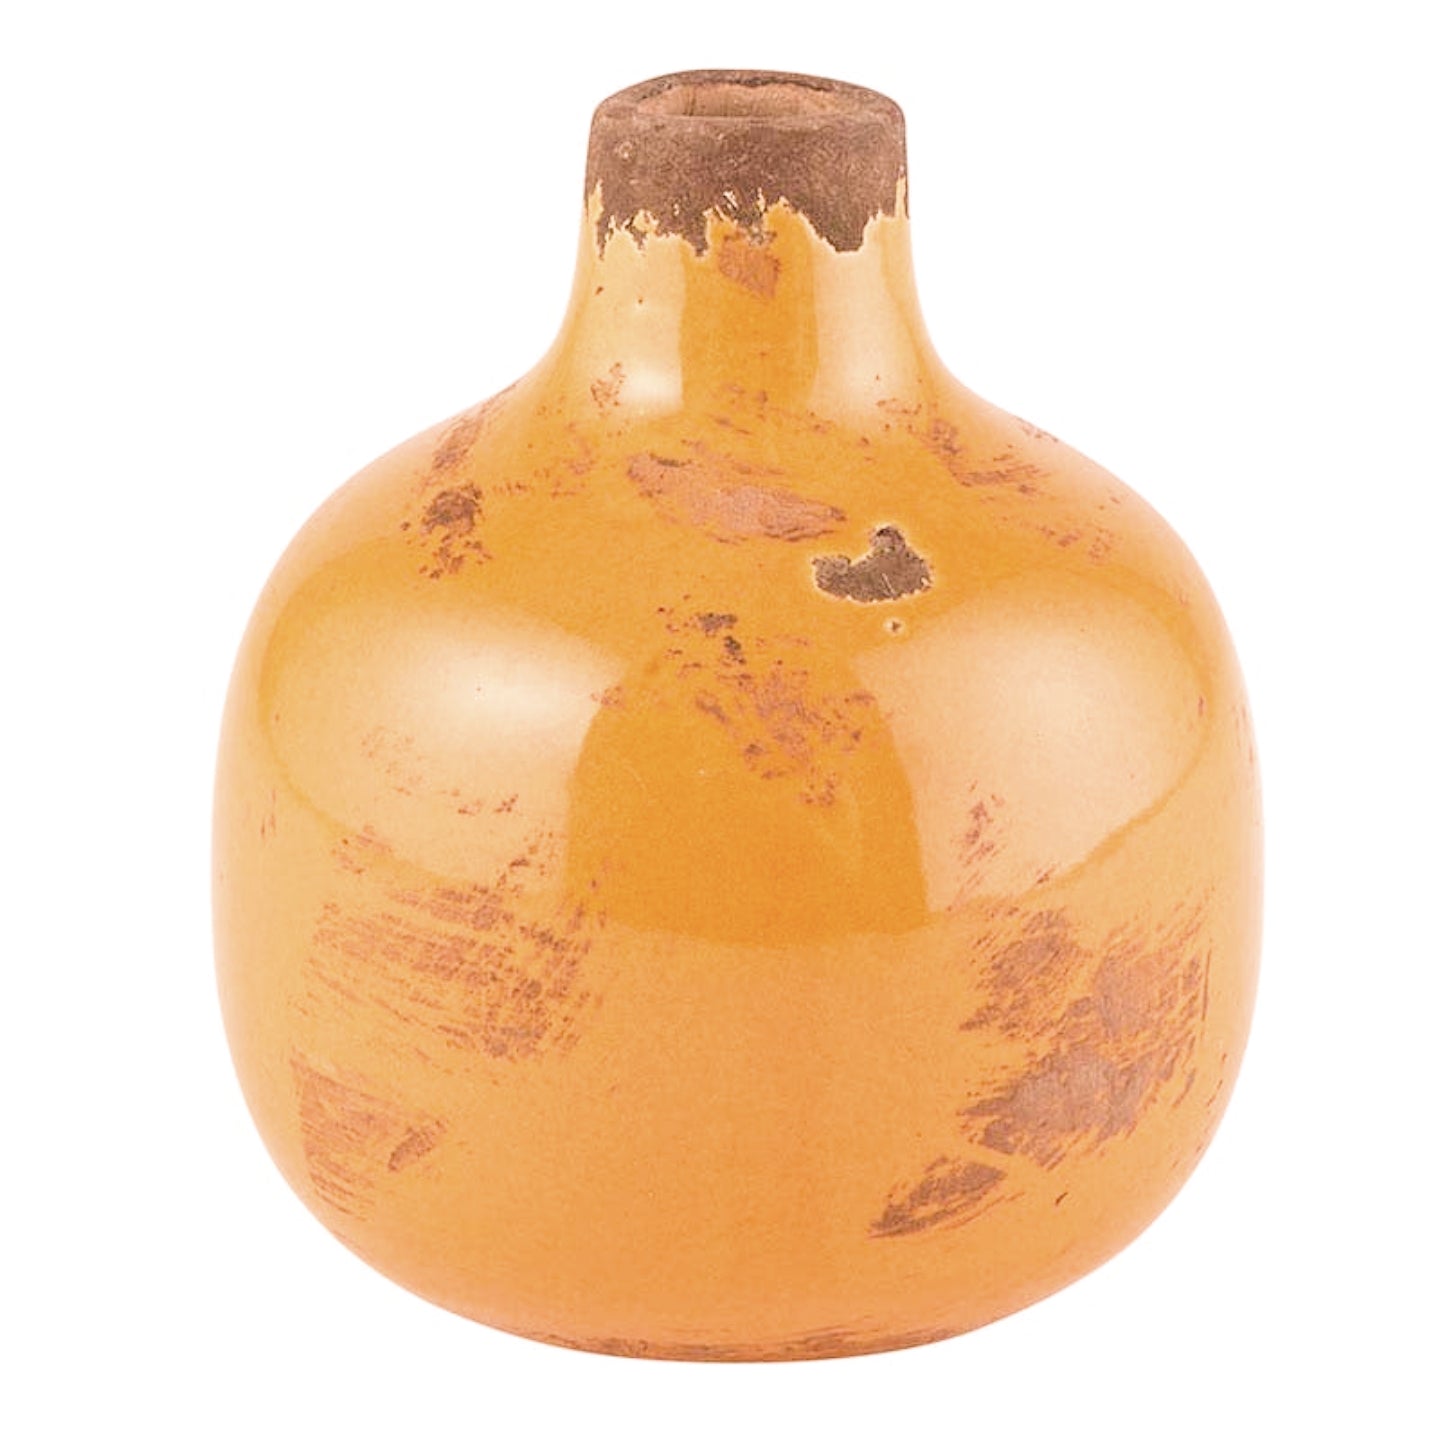 Aged Mini Bud Vase - Peachy Orange